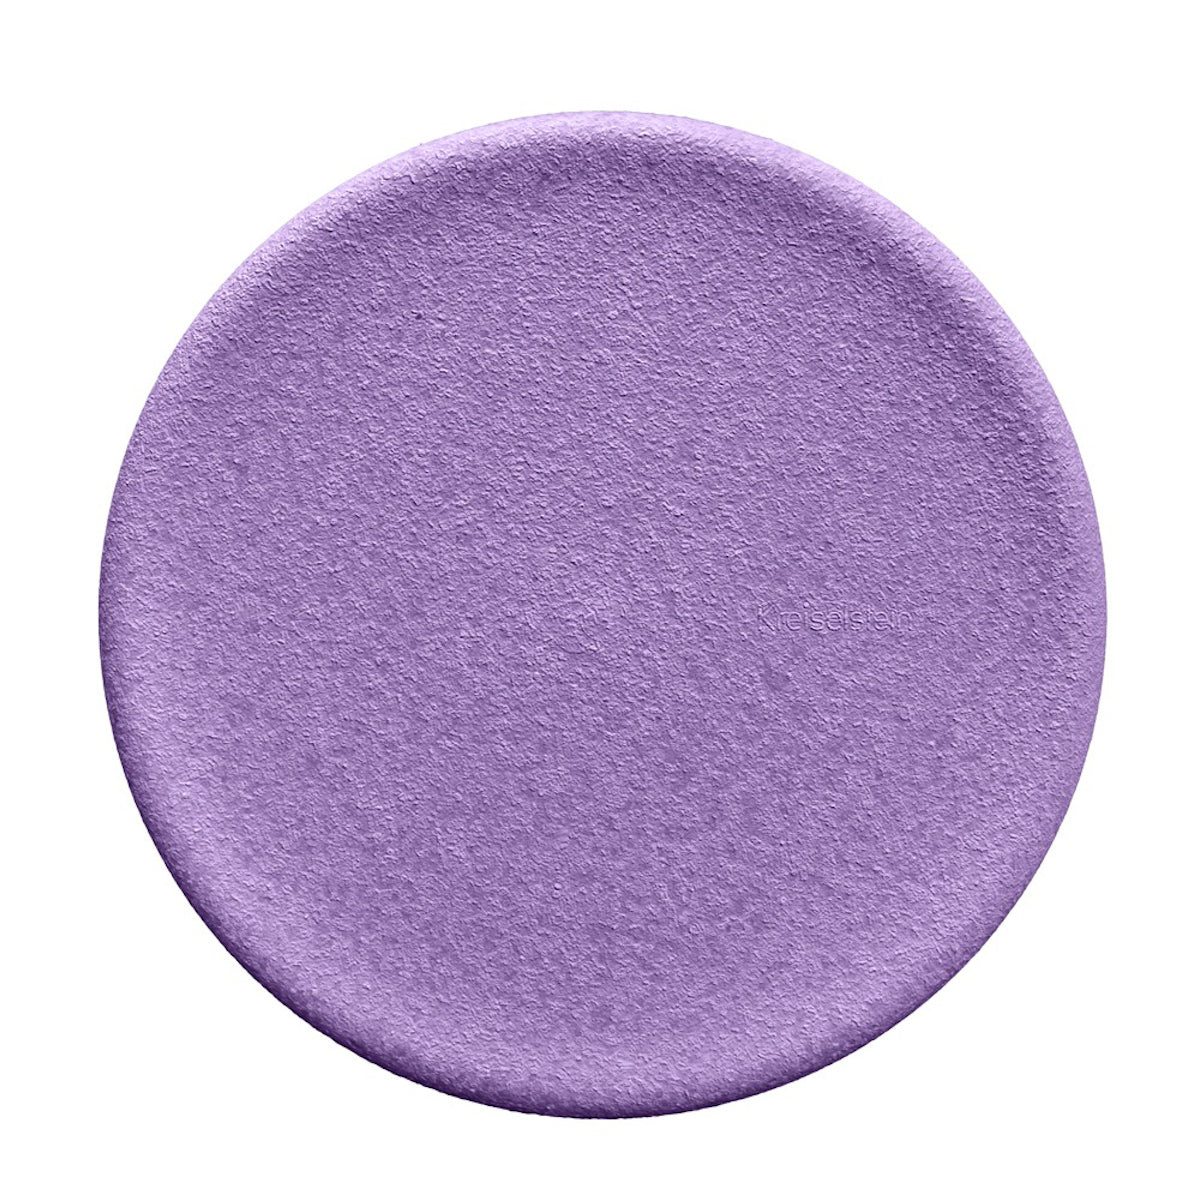 Stapelstein board violet is het perfecte speelgoed voor leuke balansoefeningen, om op te zitten of om te gebruiken in een zelfgemaakt parcours. Met dit open einde speelgoed zijn de mogelijkheden eindeloos. VanZus.